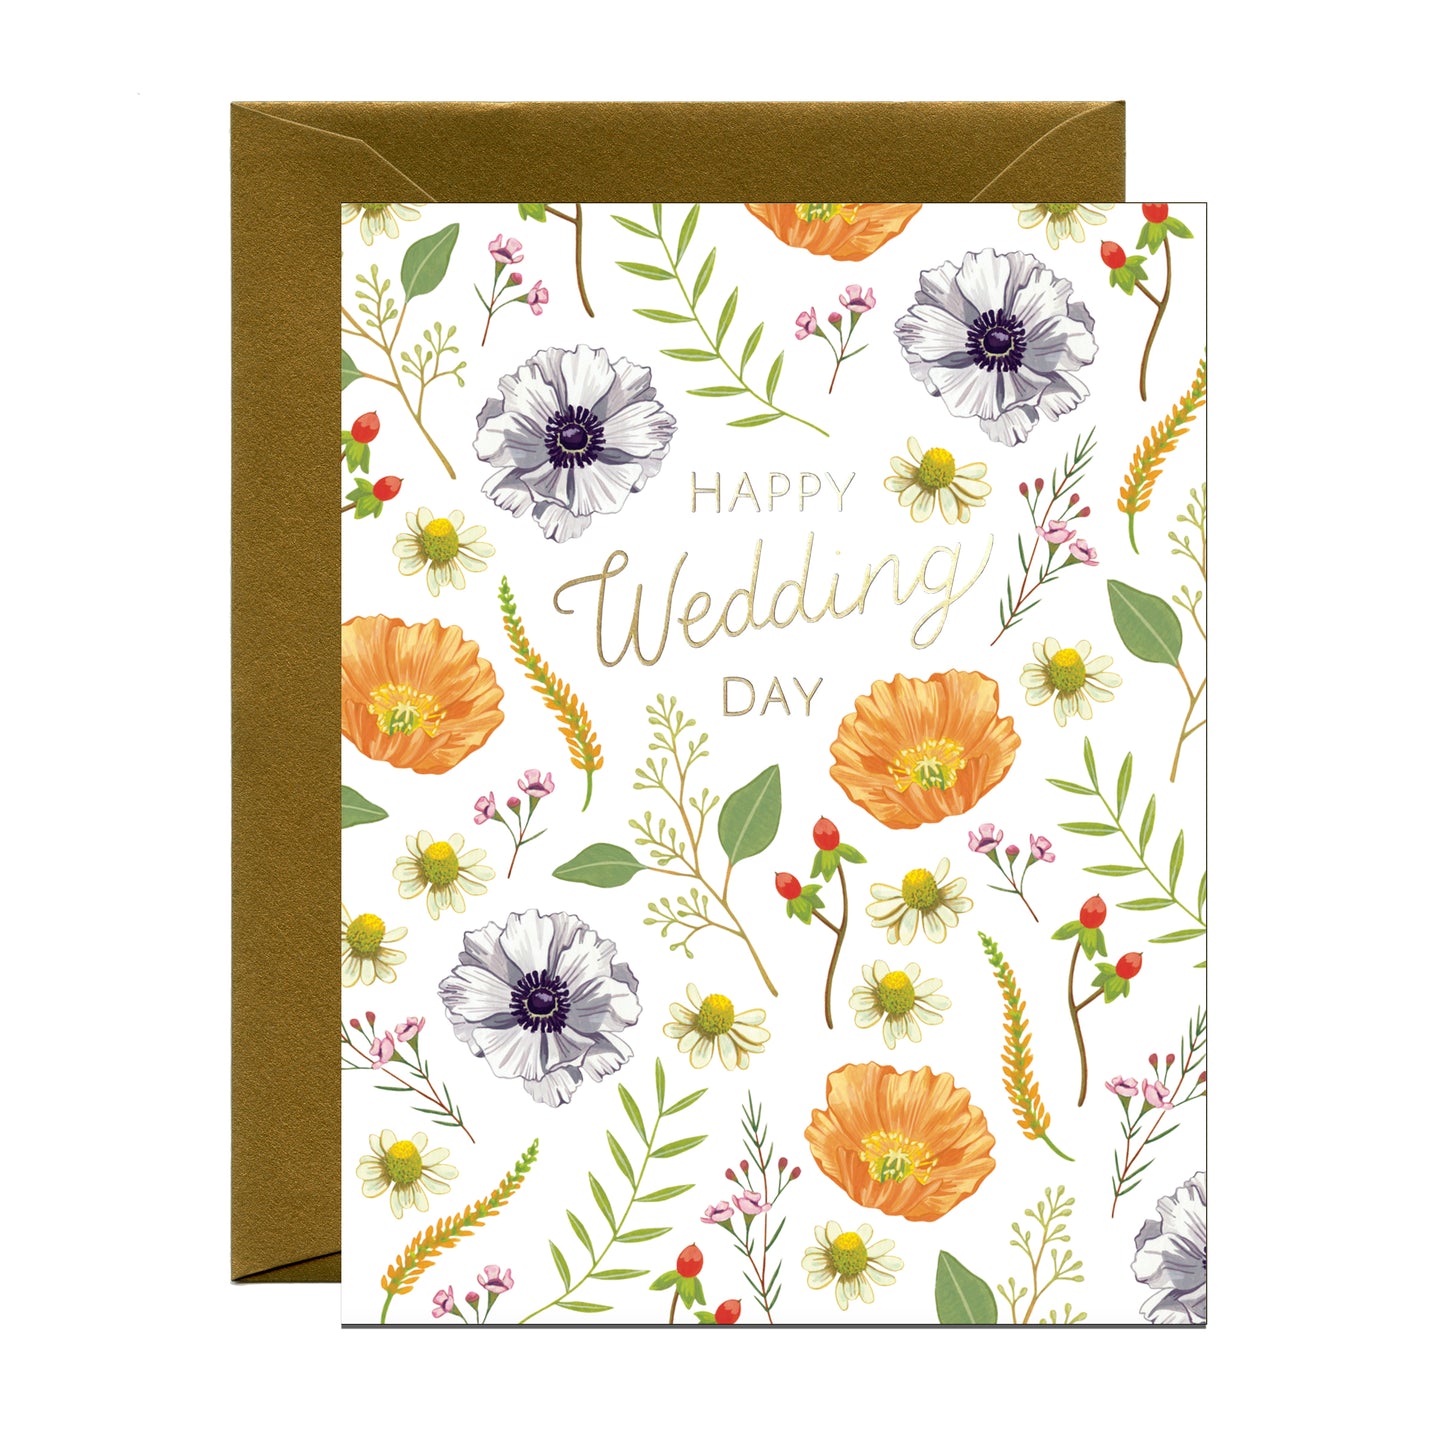 WEDDING FLOWERS - WEDDING GREETING CARD